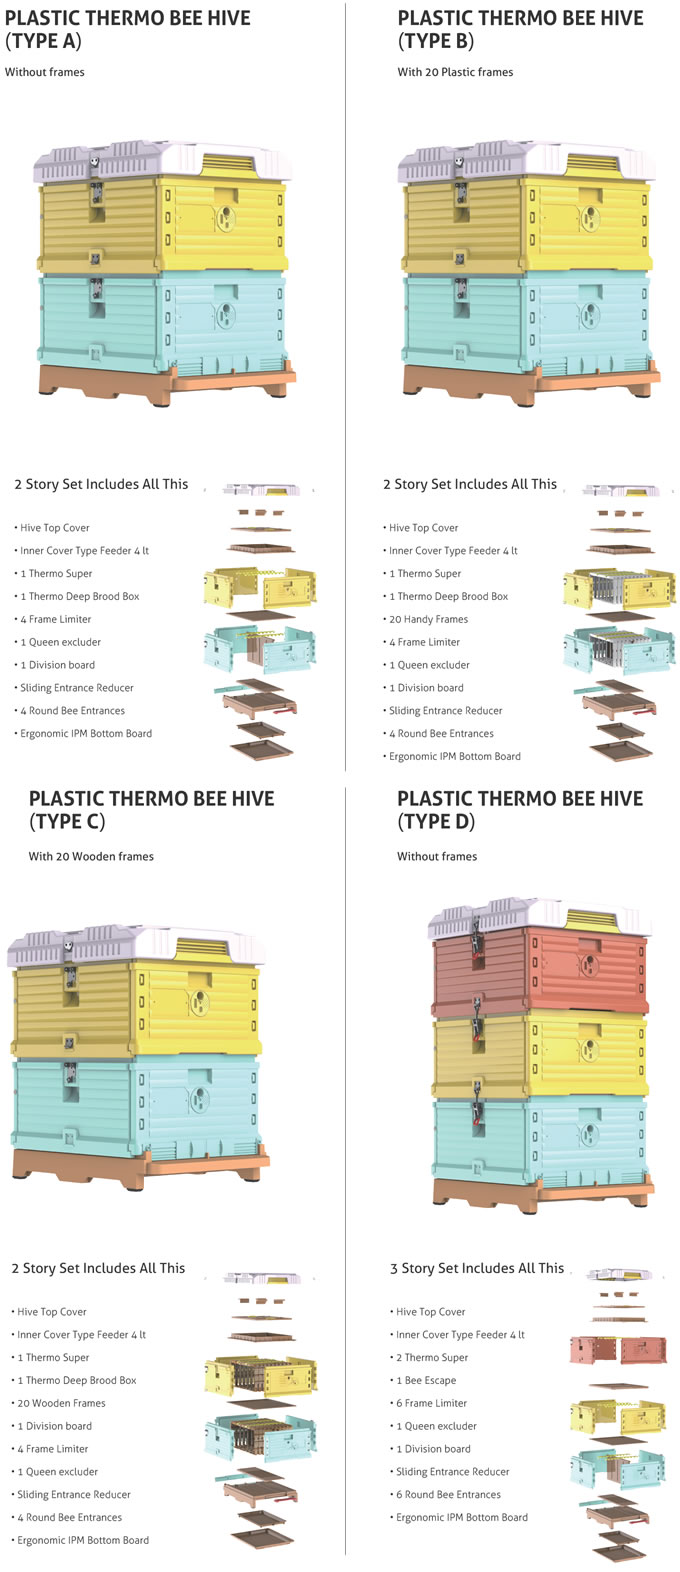 Plastic Thromo Beehive